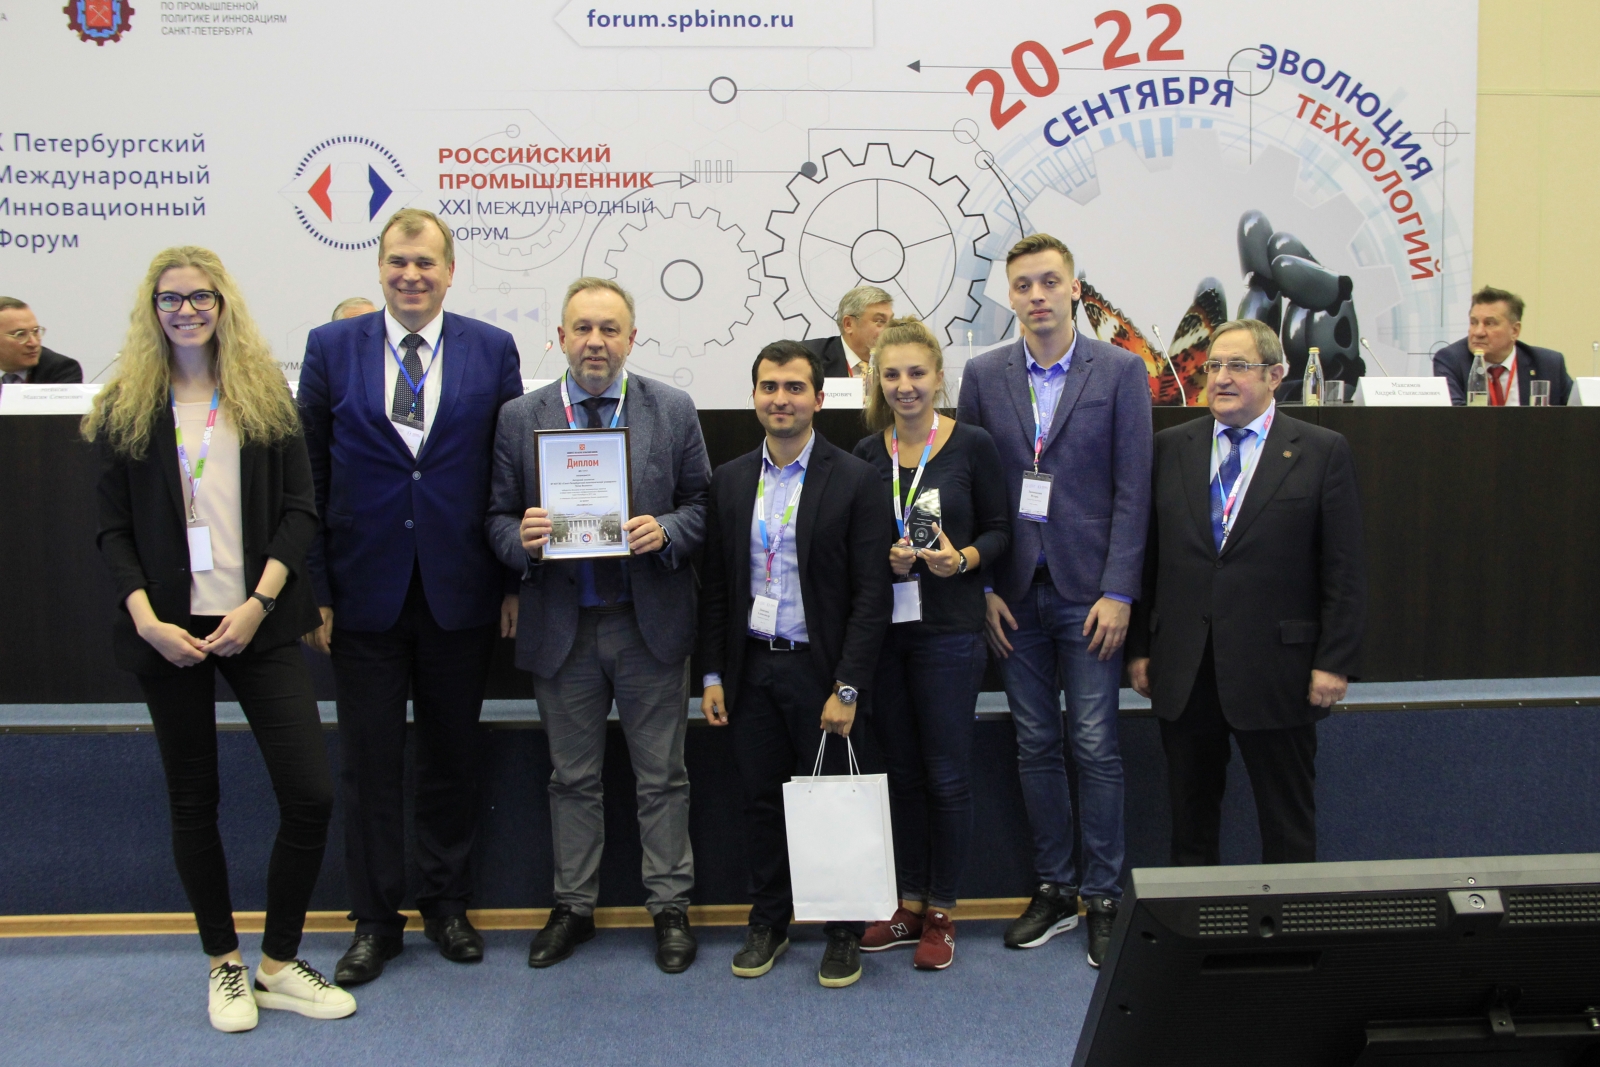 Команда ВШУБ победила в конкурсе лучших инновационных проектов в сфере науки и высшего профессионального образования Санкт-Петербурга в 2017 году